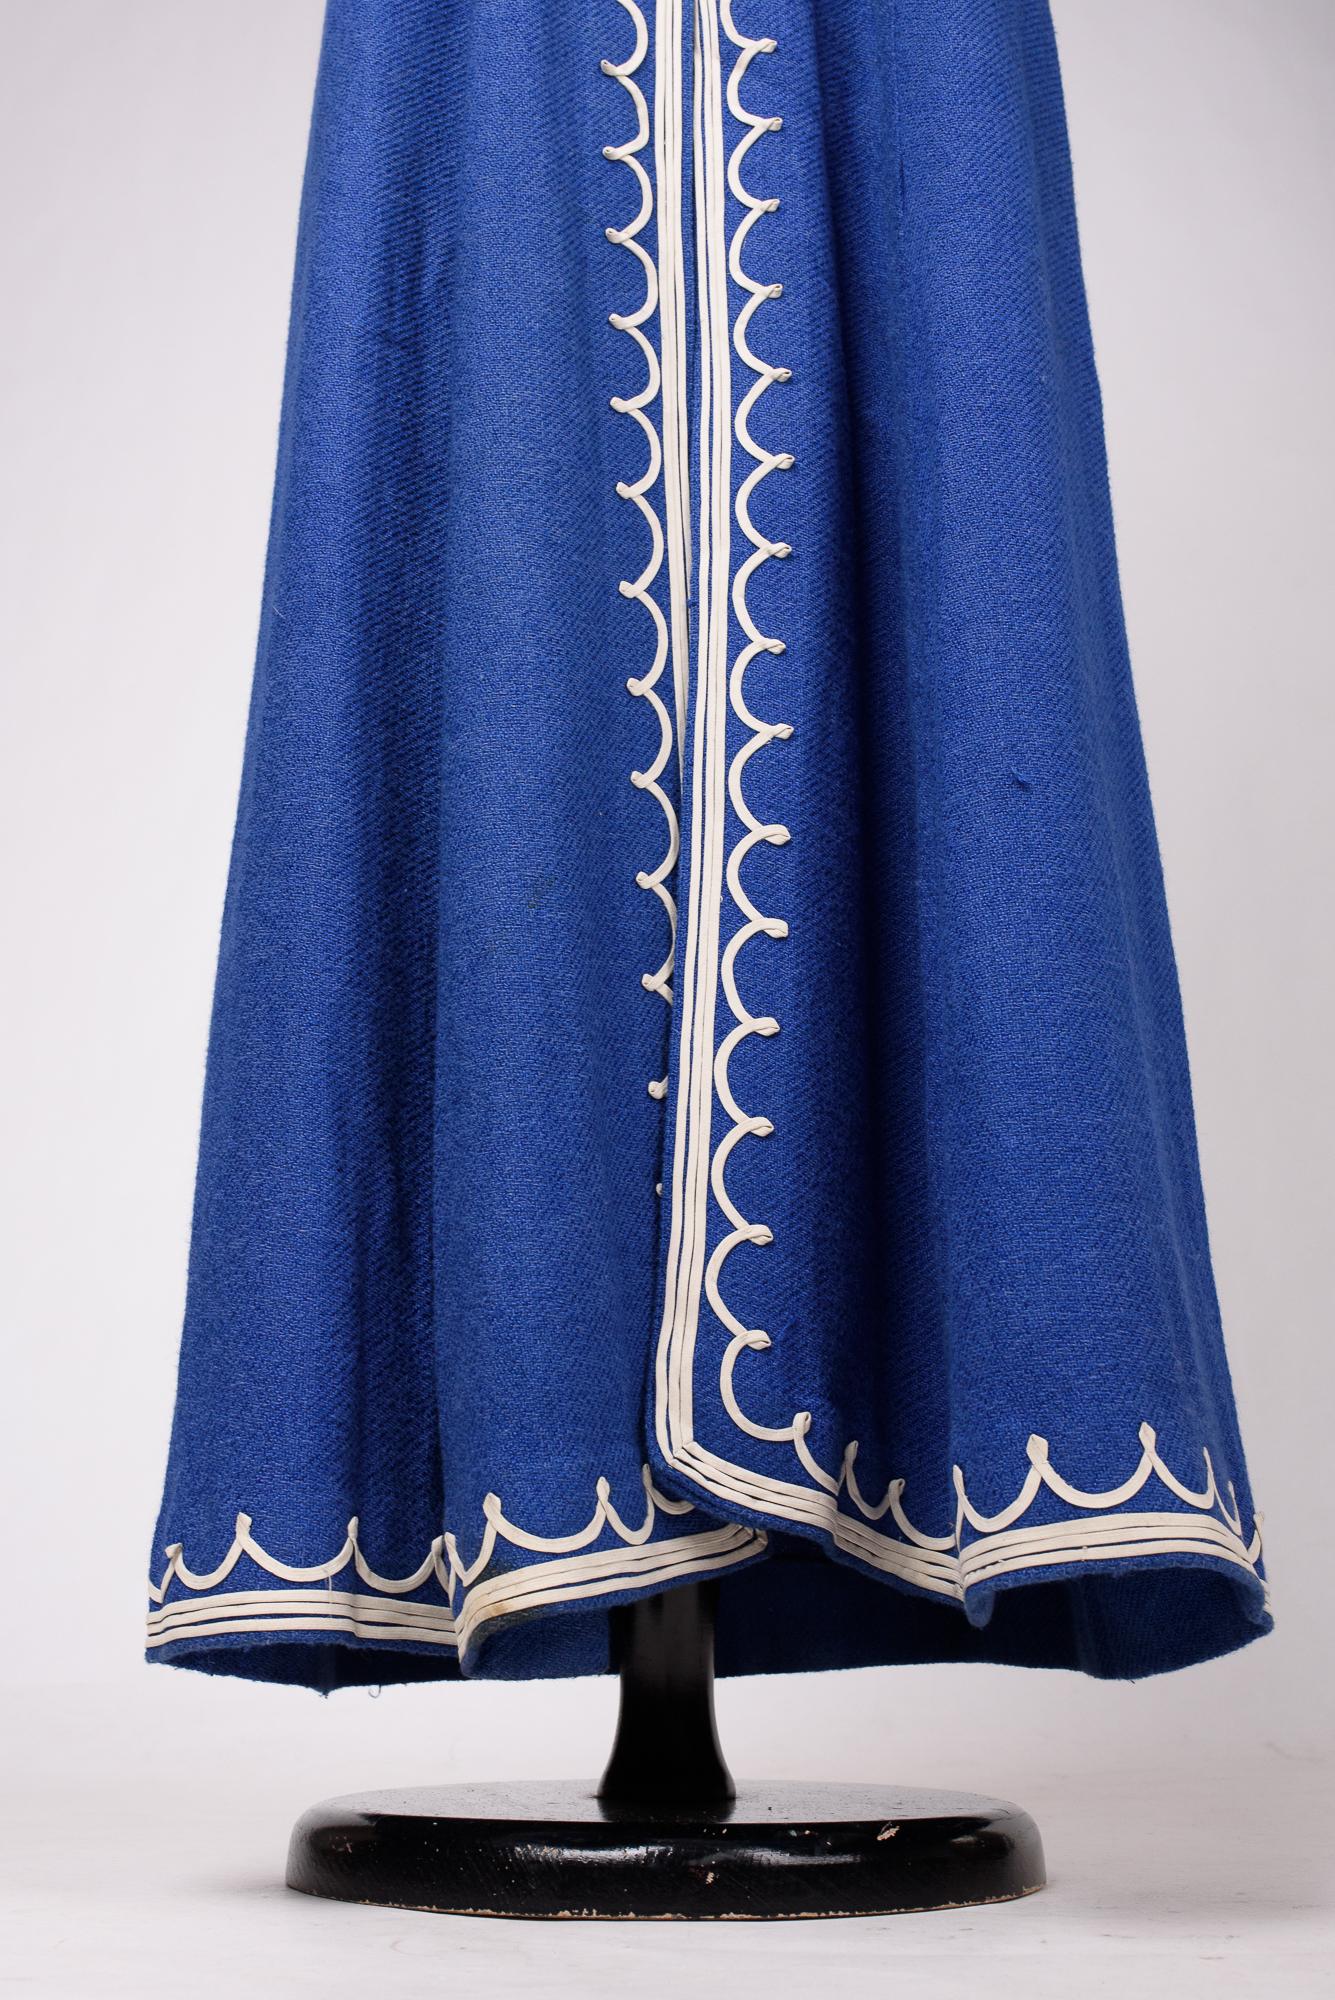 A Rare Blue Navy woollen dress by Henry à la Pensée - France Circa 1945 For Sale 11